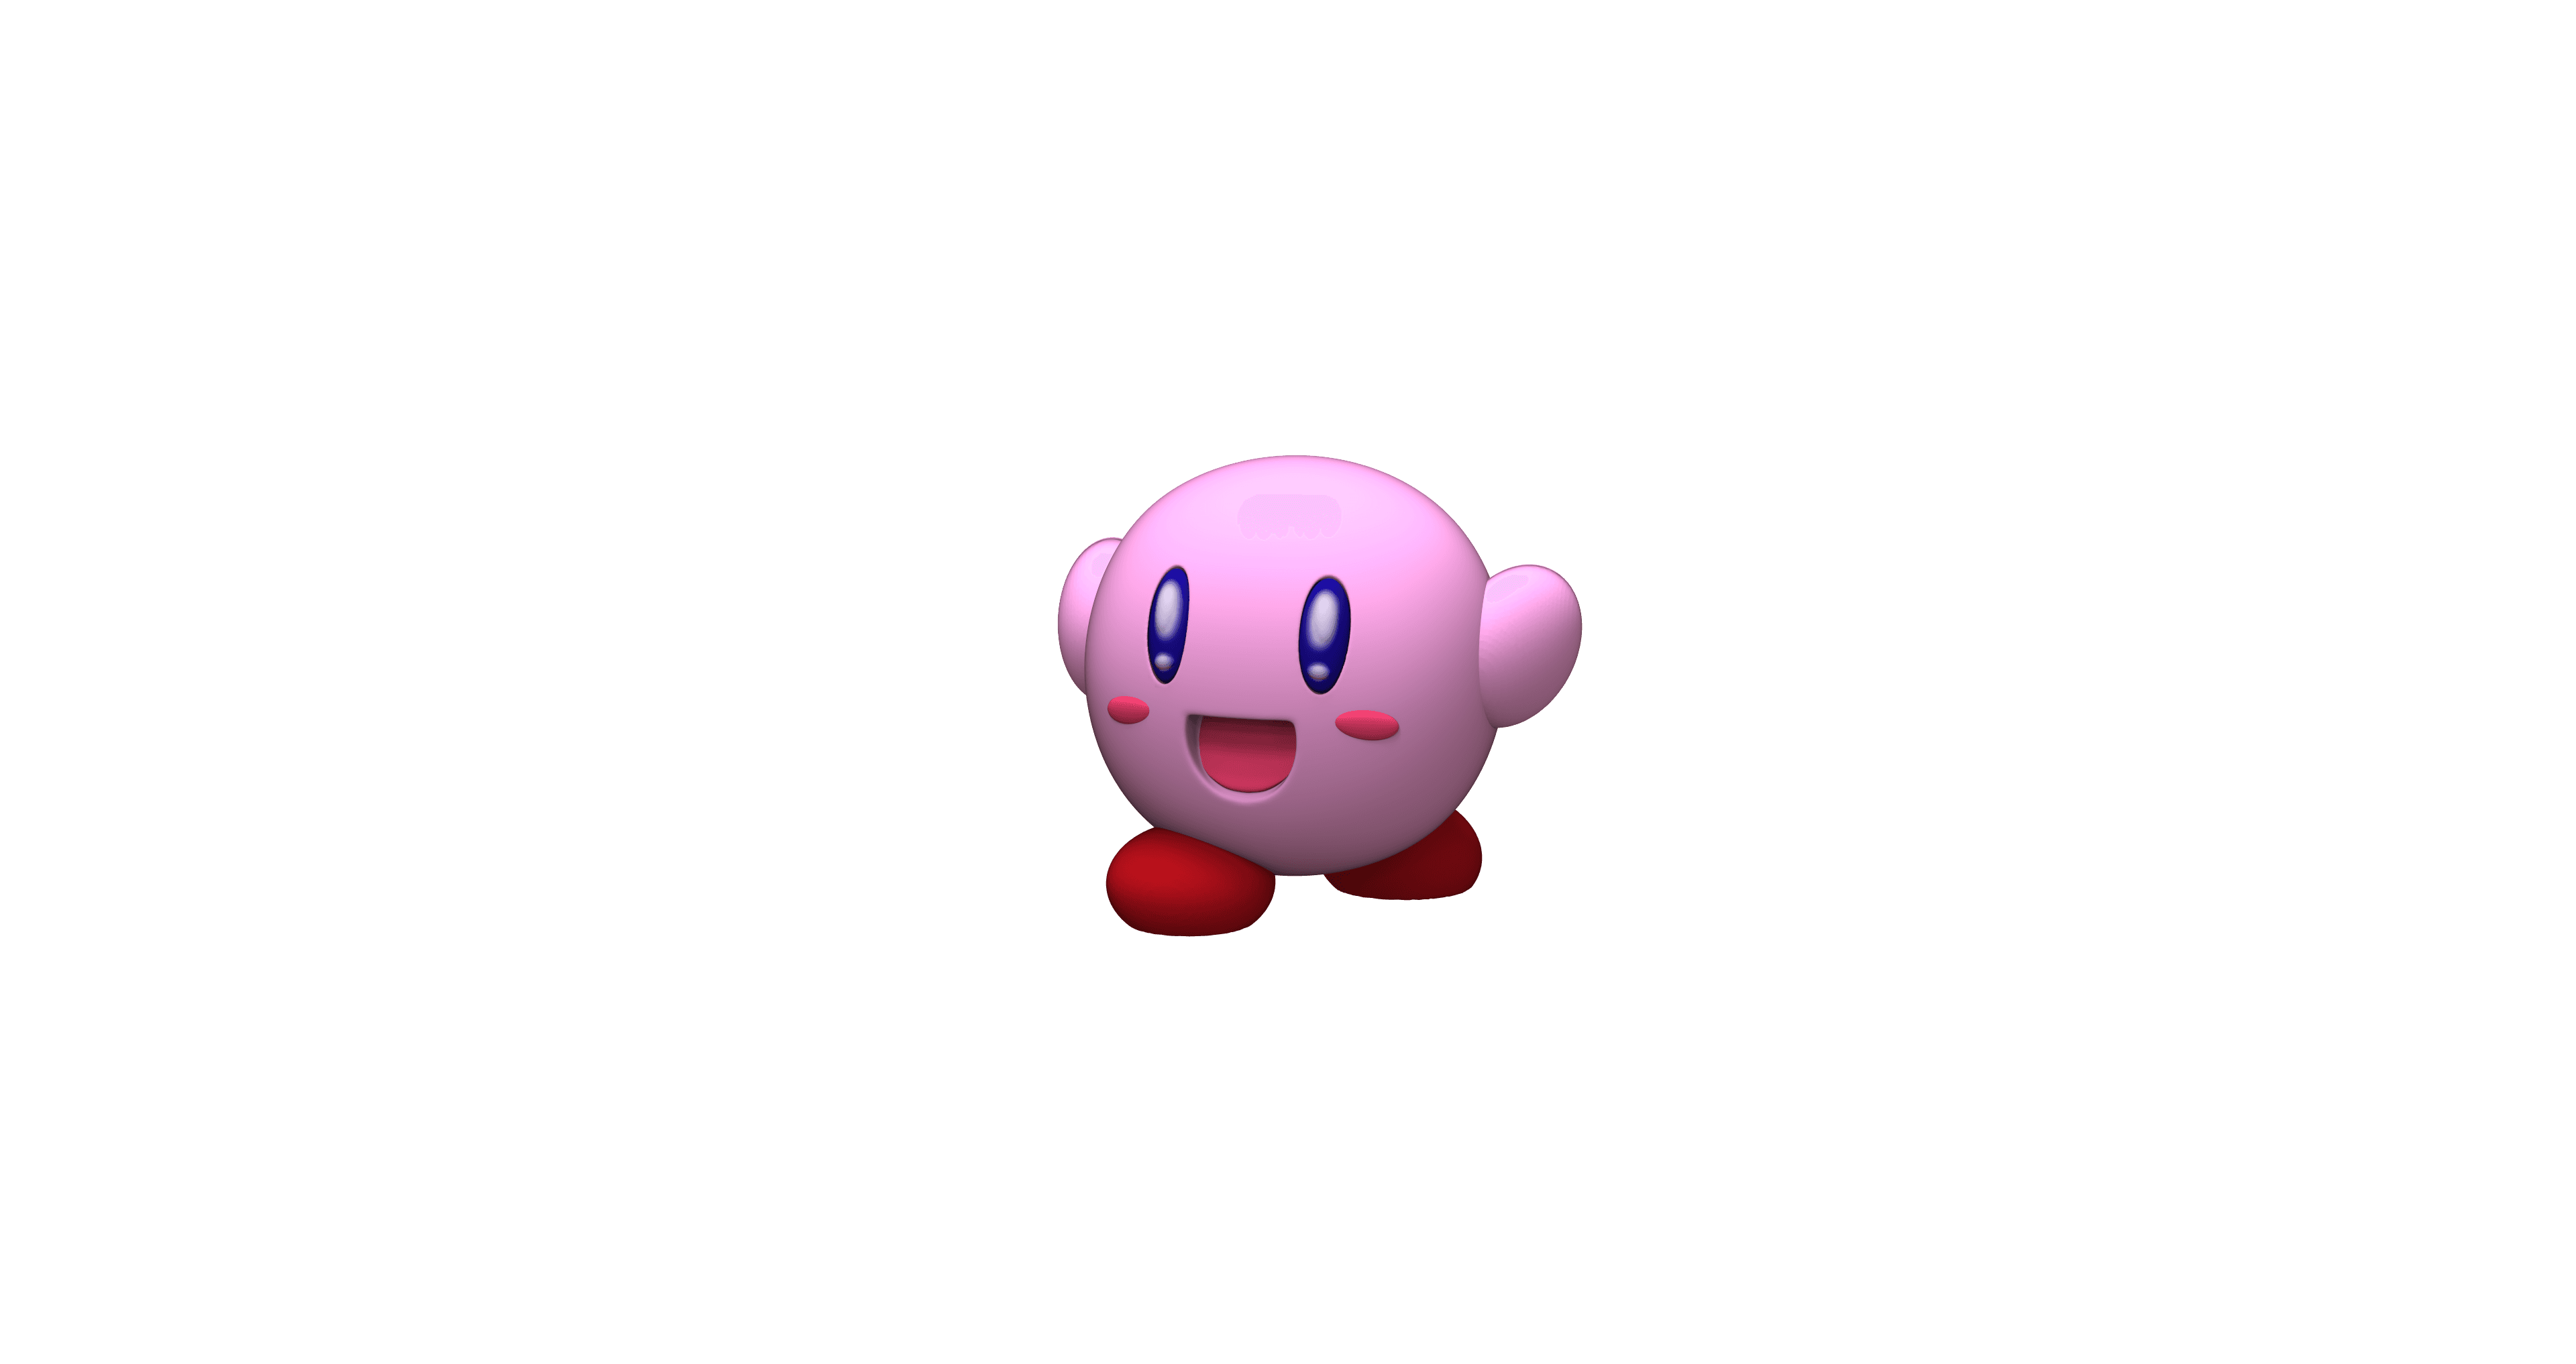  Kirby fan art - Ready to go  3d model